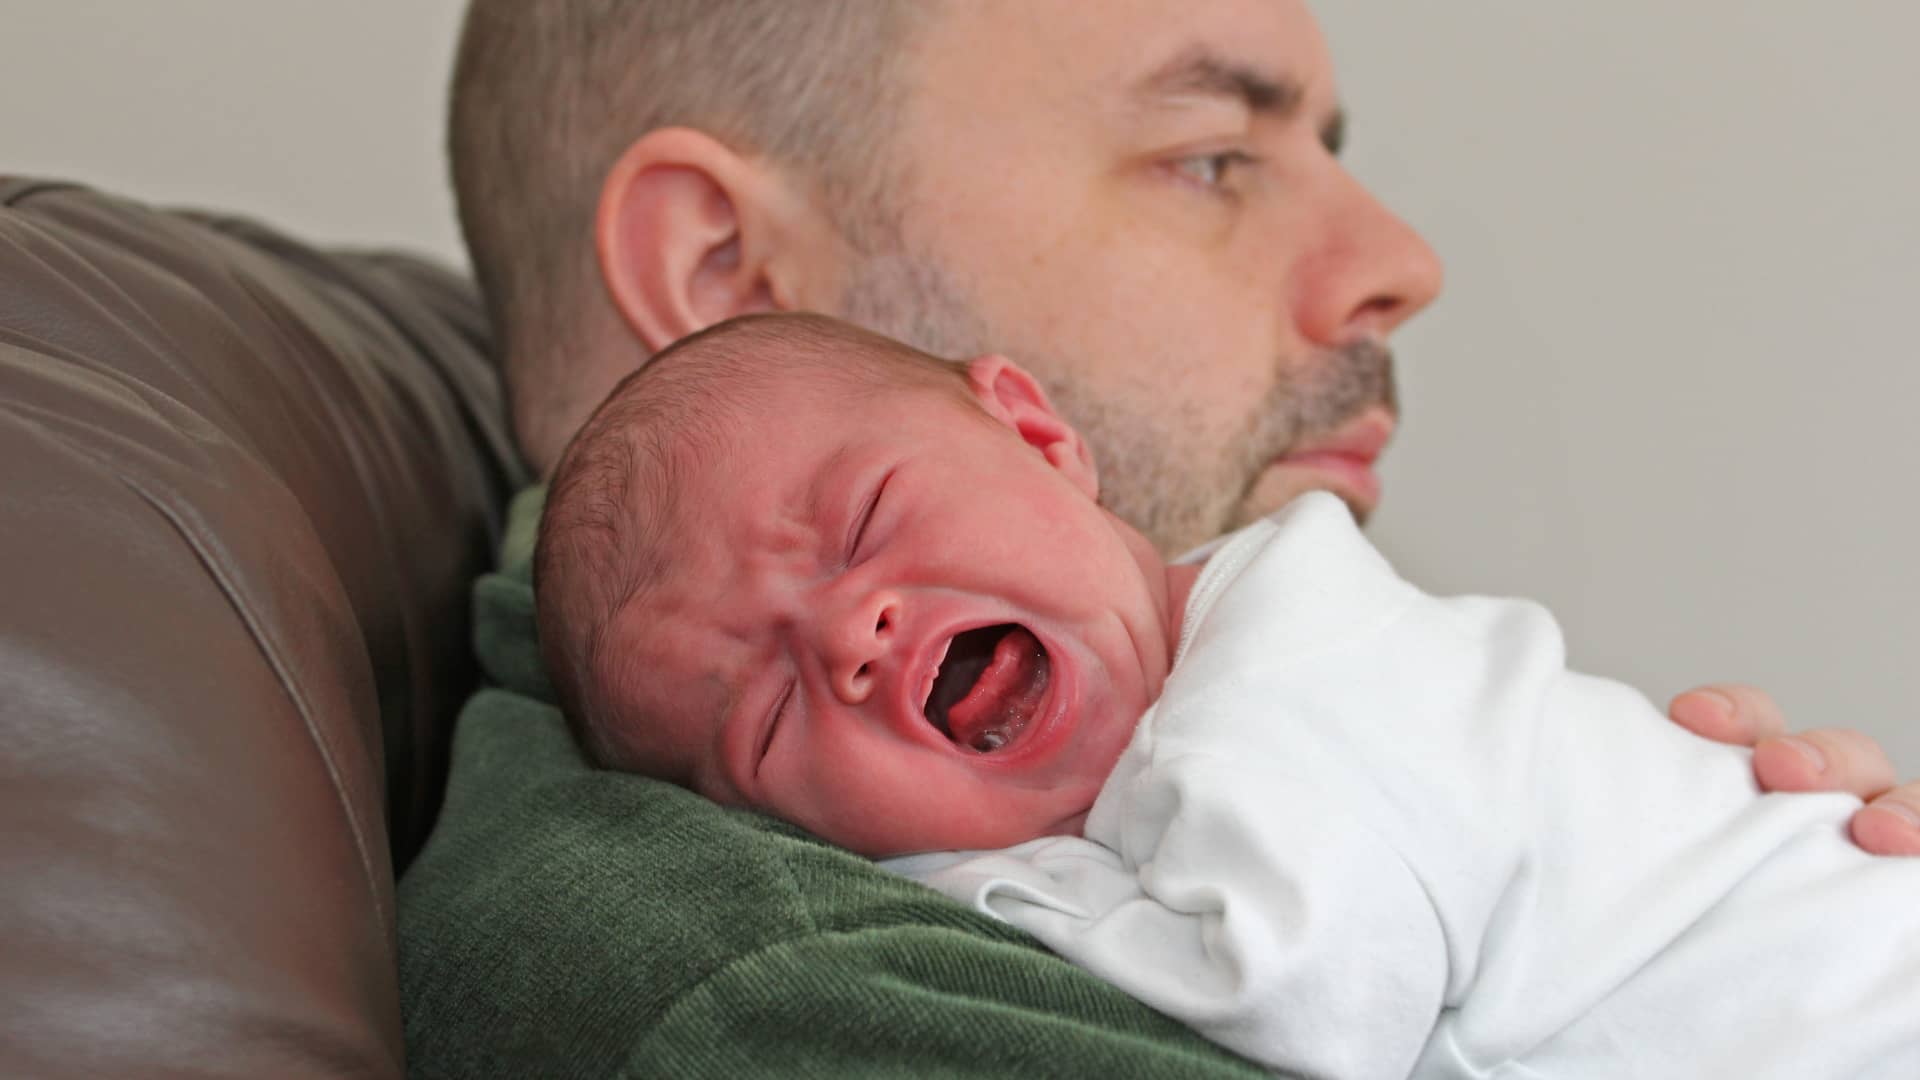 Los cólicos en bebés: cara roja, puños cerrados y llanto intenso